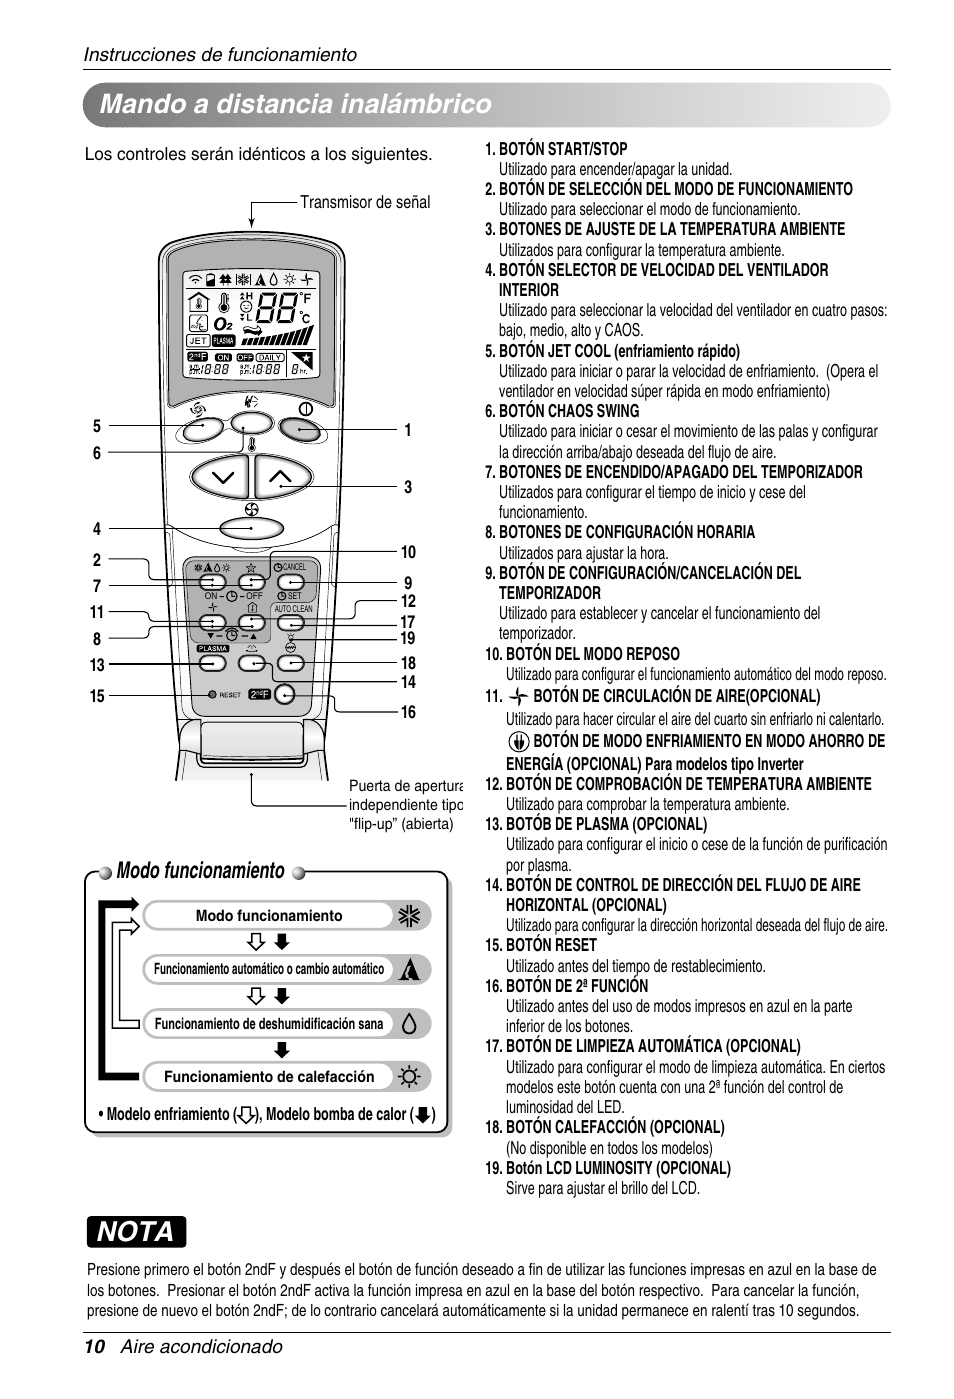 Rendición Rico Abstracción Nota, Mando a distancia inalámbrico, Modo funcionamiento | LG S12AM Manual  del usuario | Página 10 / 21